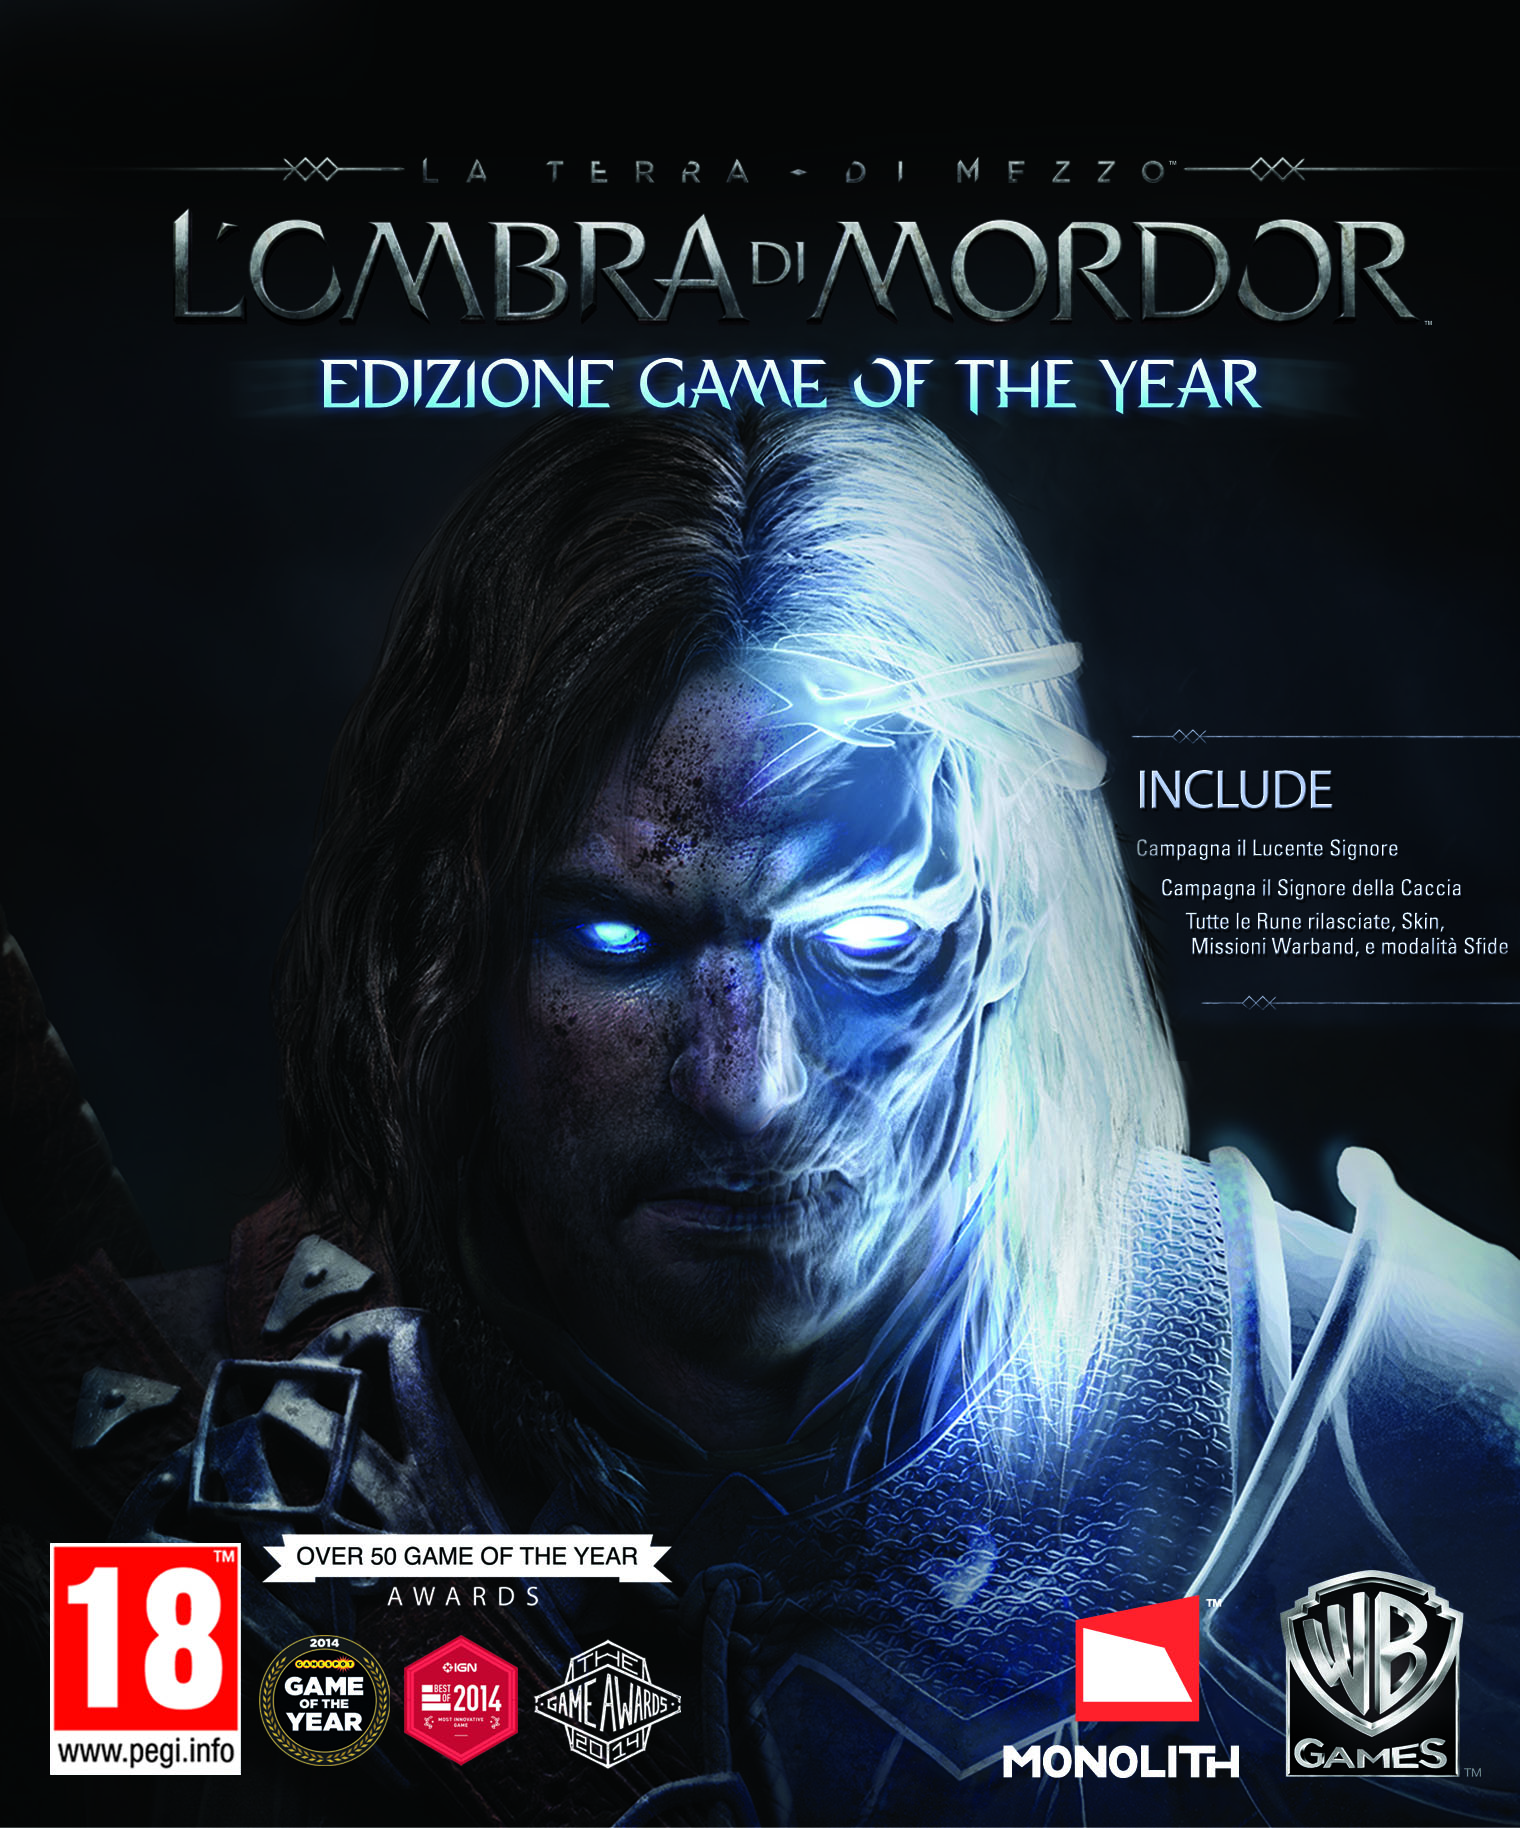 Annunciato L’Ombra di Mordor Game of the Year Edition